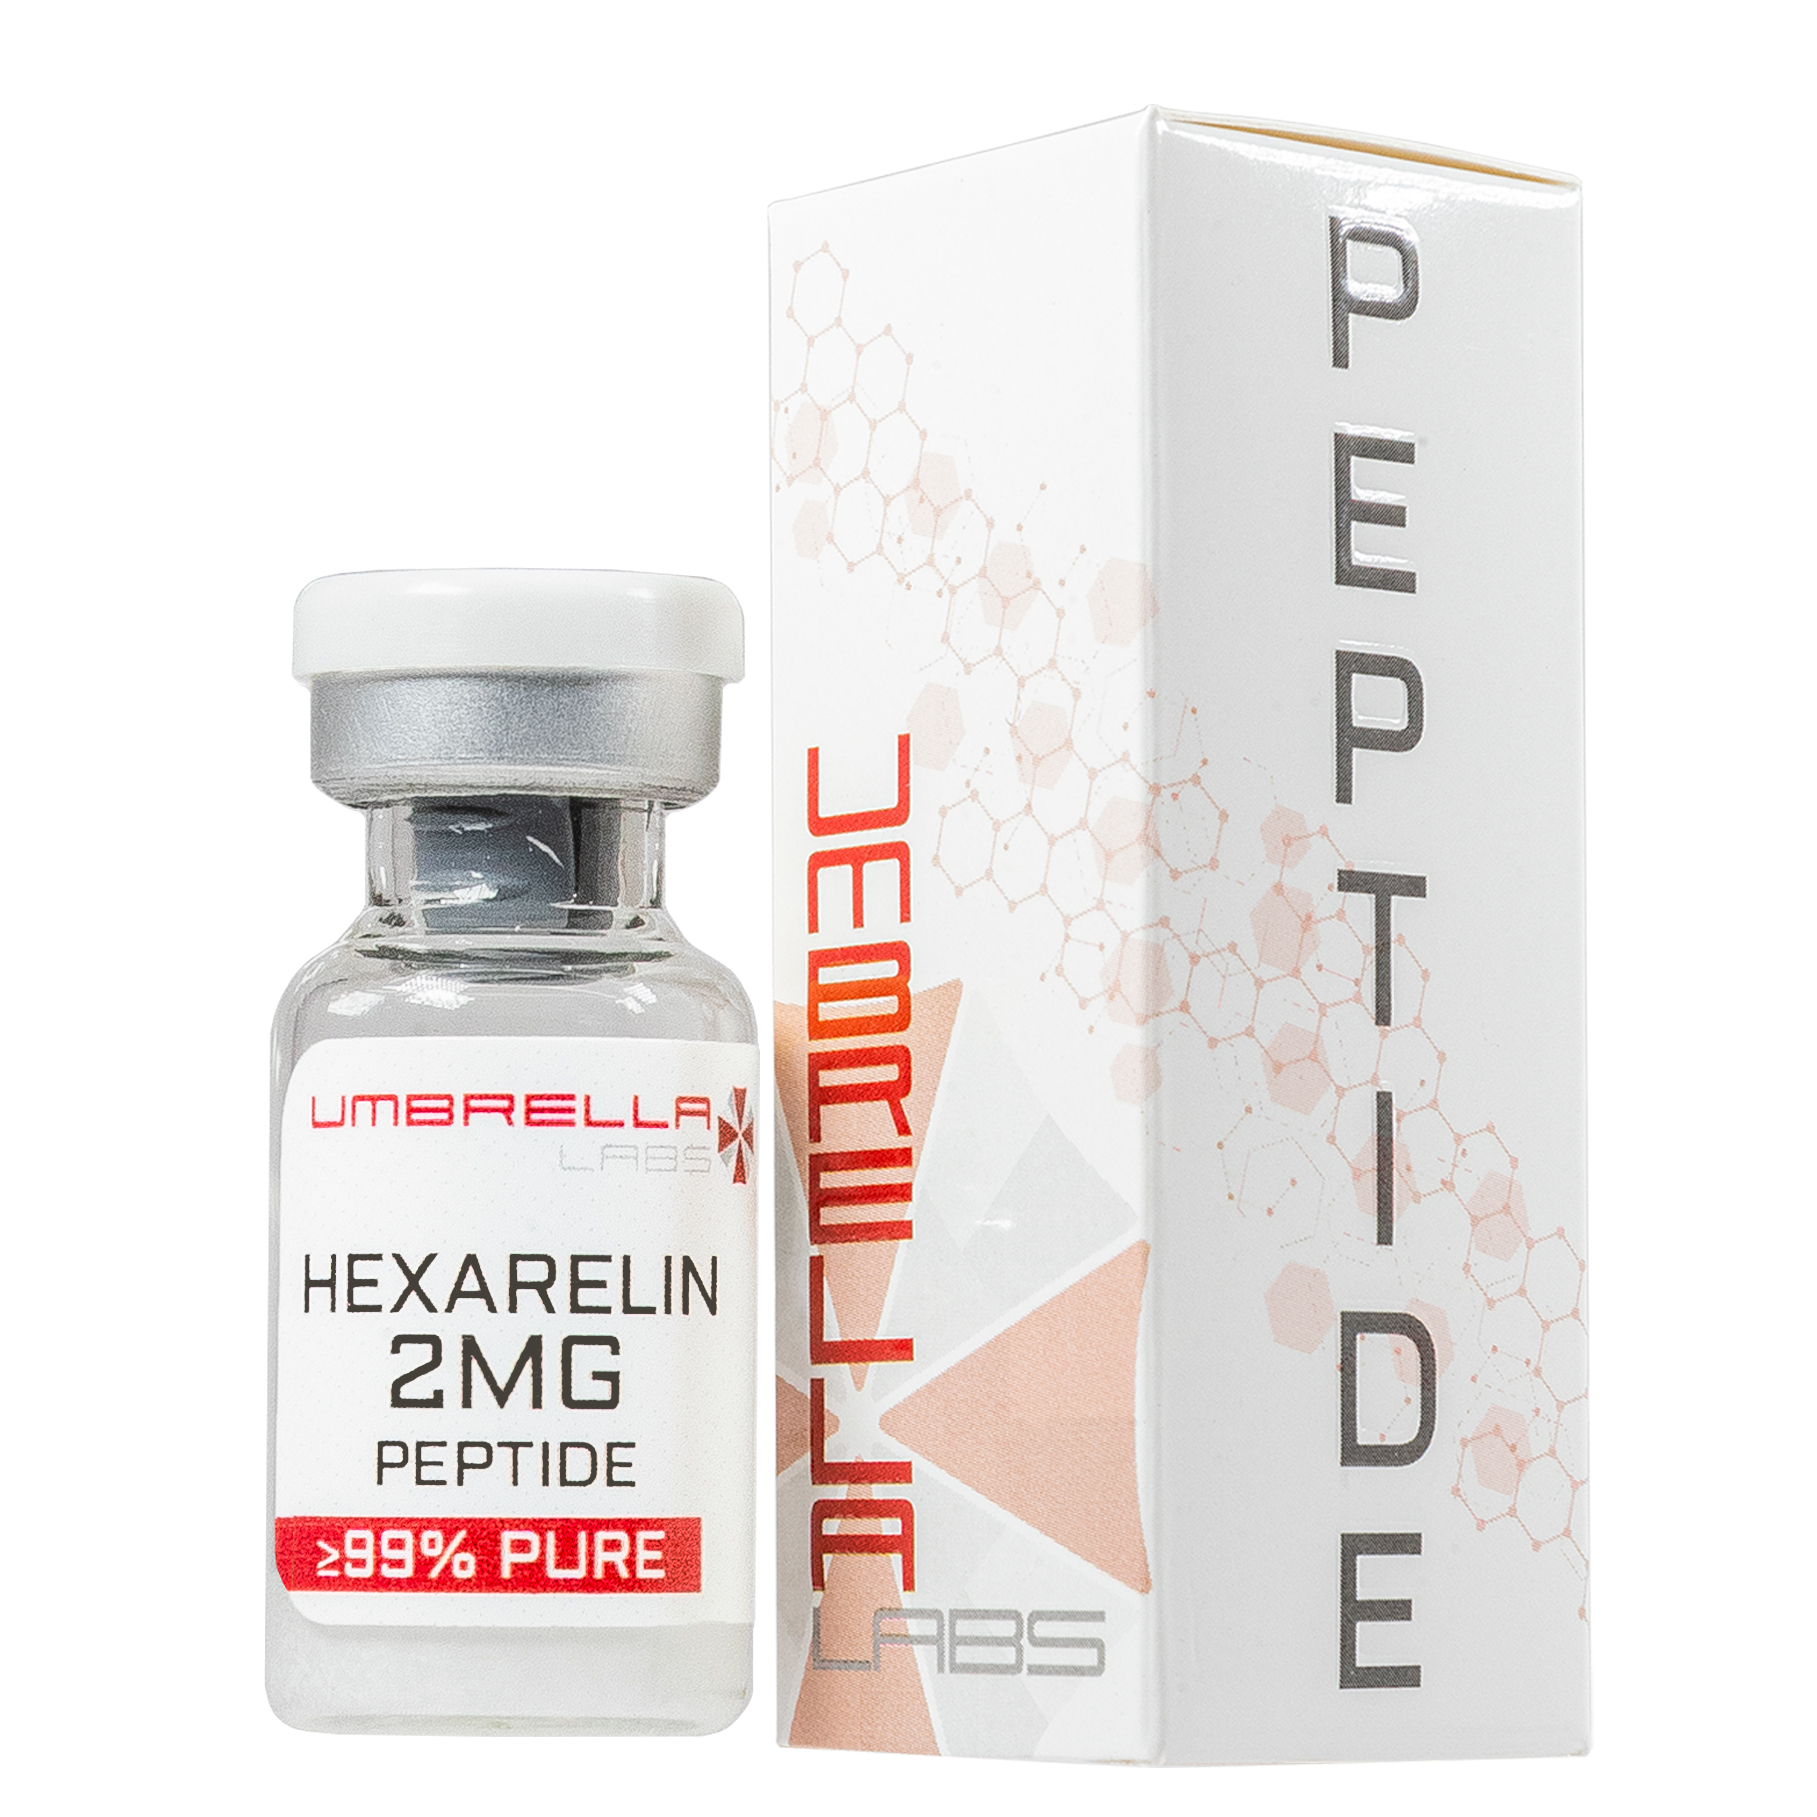 hexarelin peptide side effects